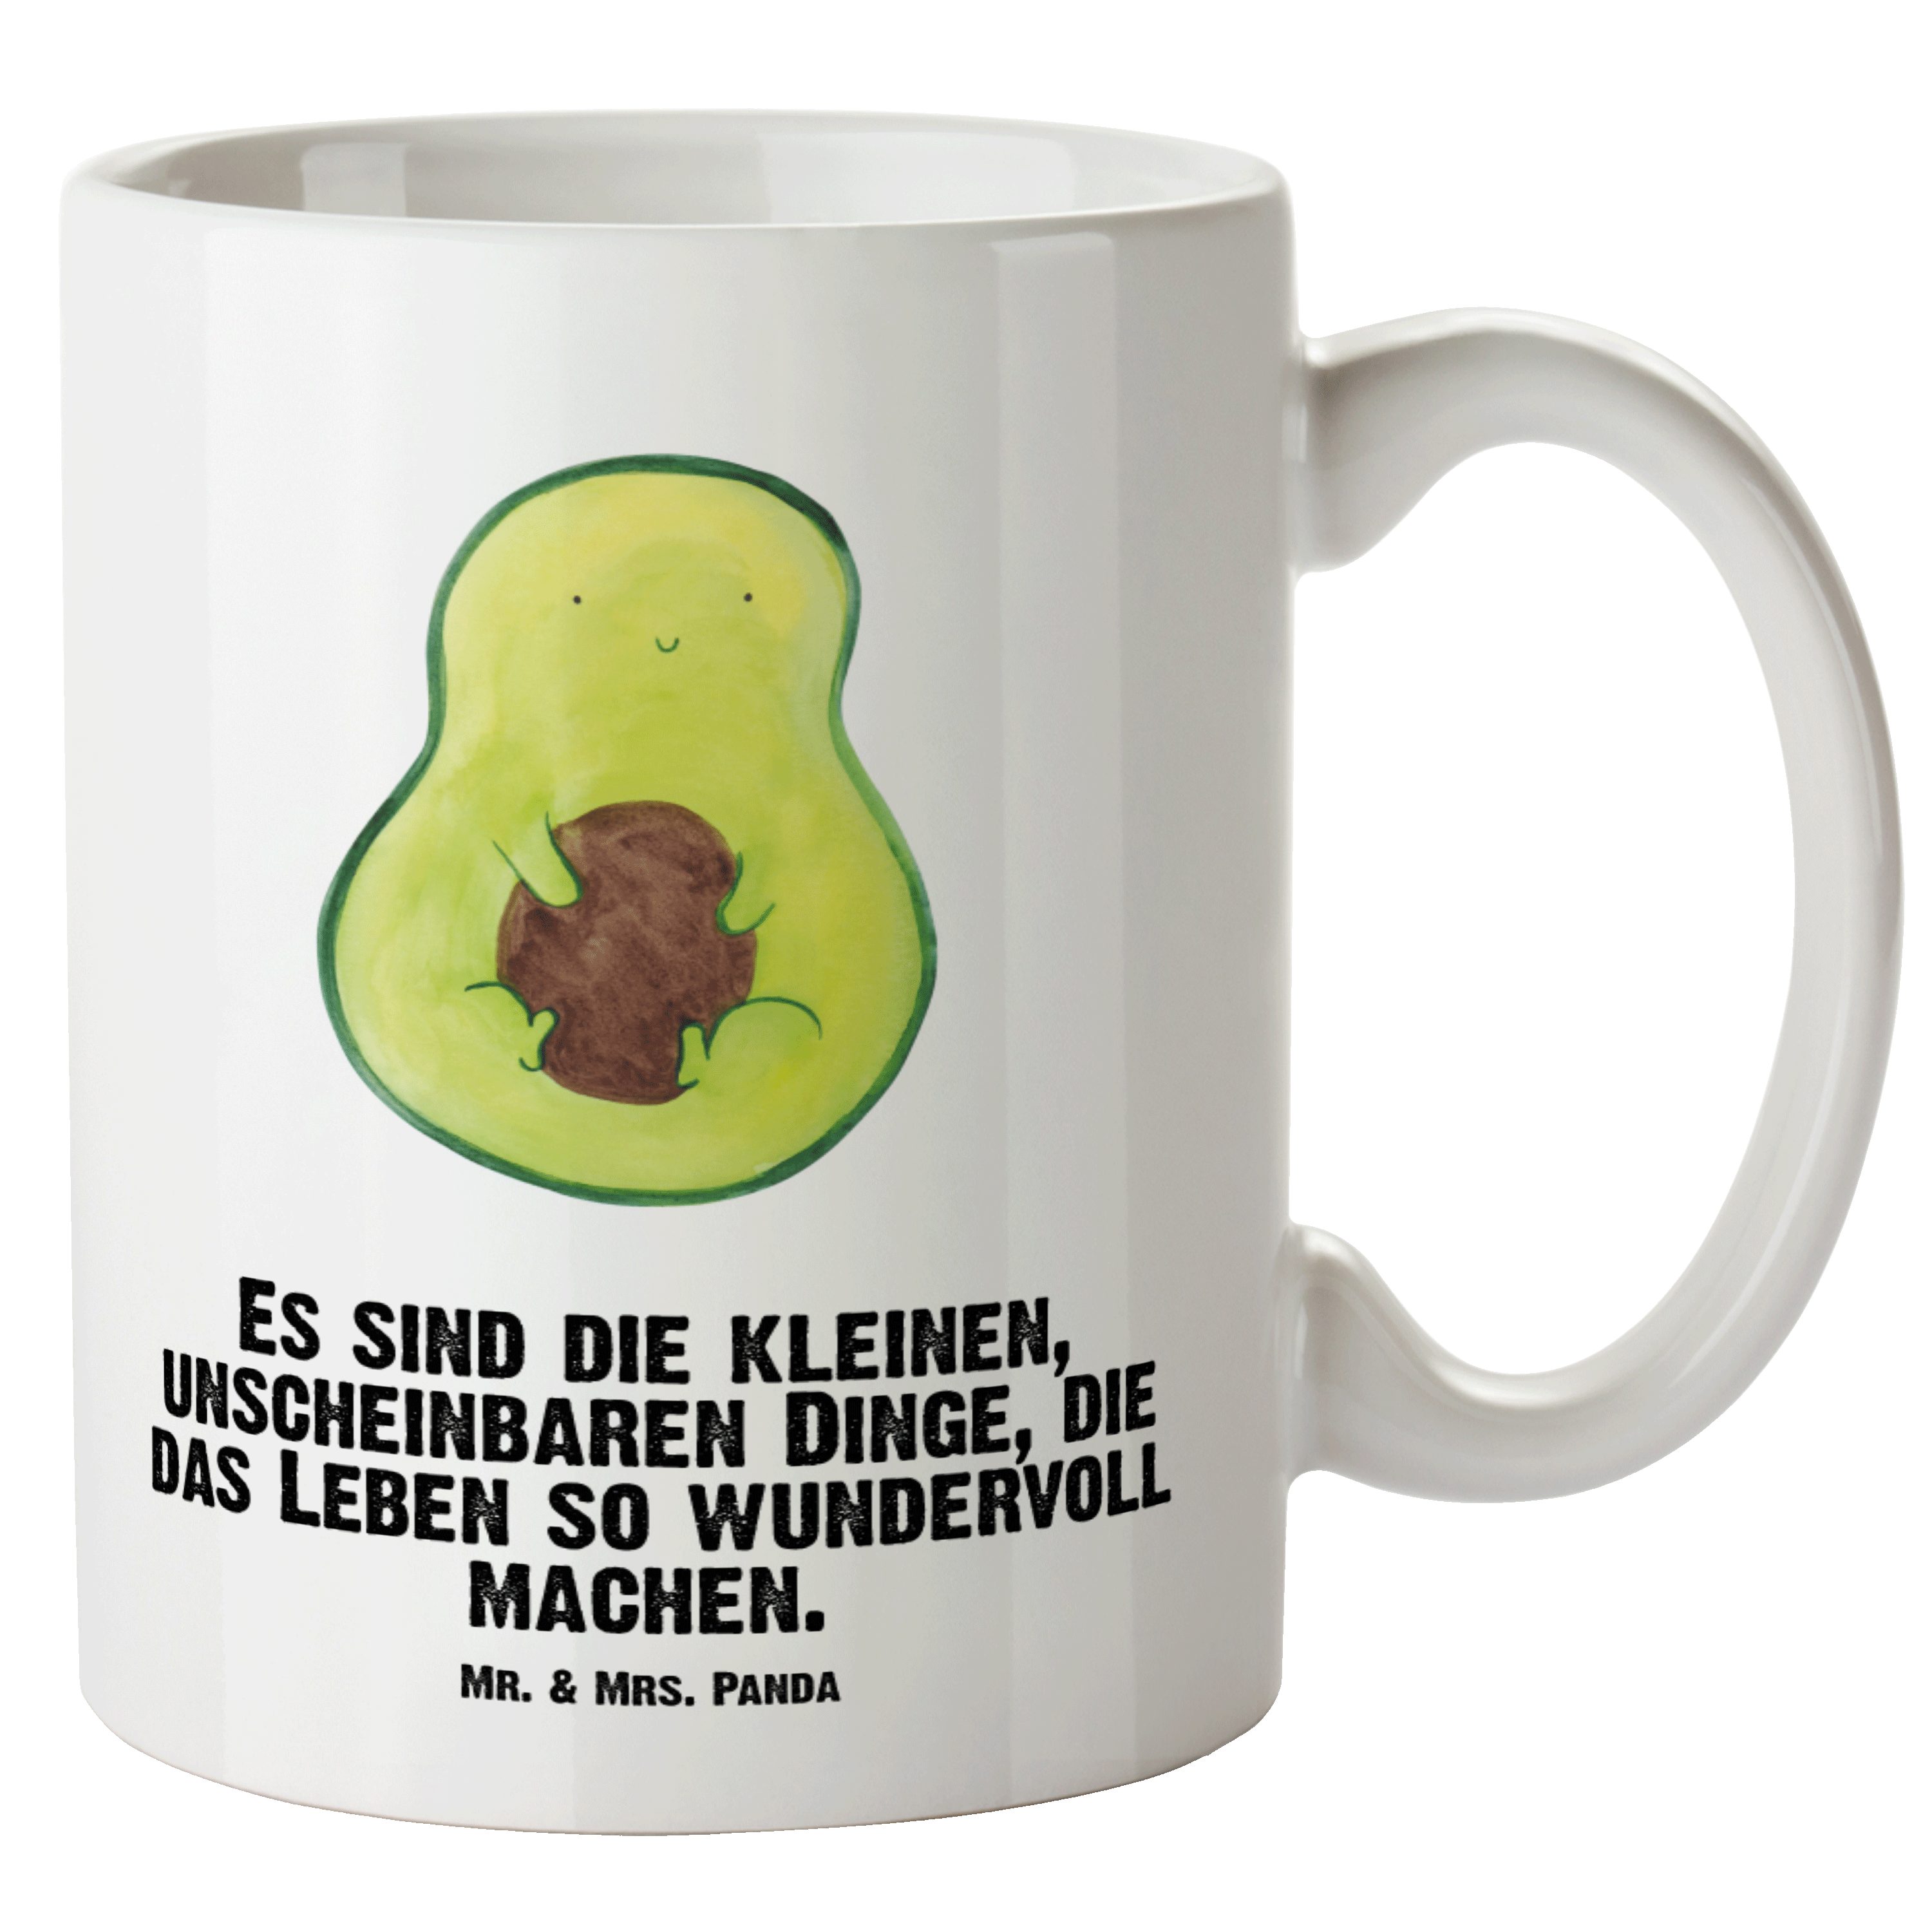 Mr. & Mrs. Panda Tasse Avocado mit Kern - Weiß - Geschenk, Groß, Jumbo Tasse, spülmaschinenf, XL Tasse Keramik